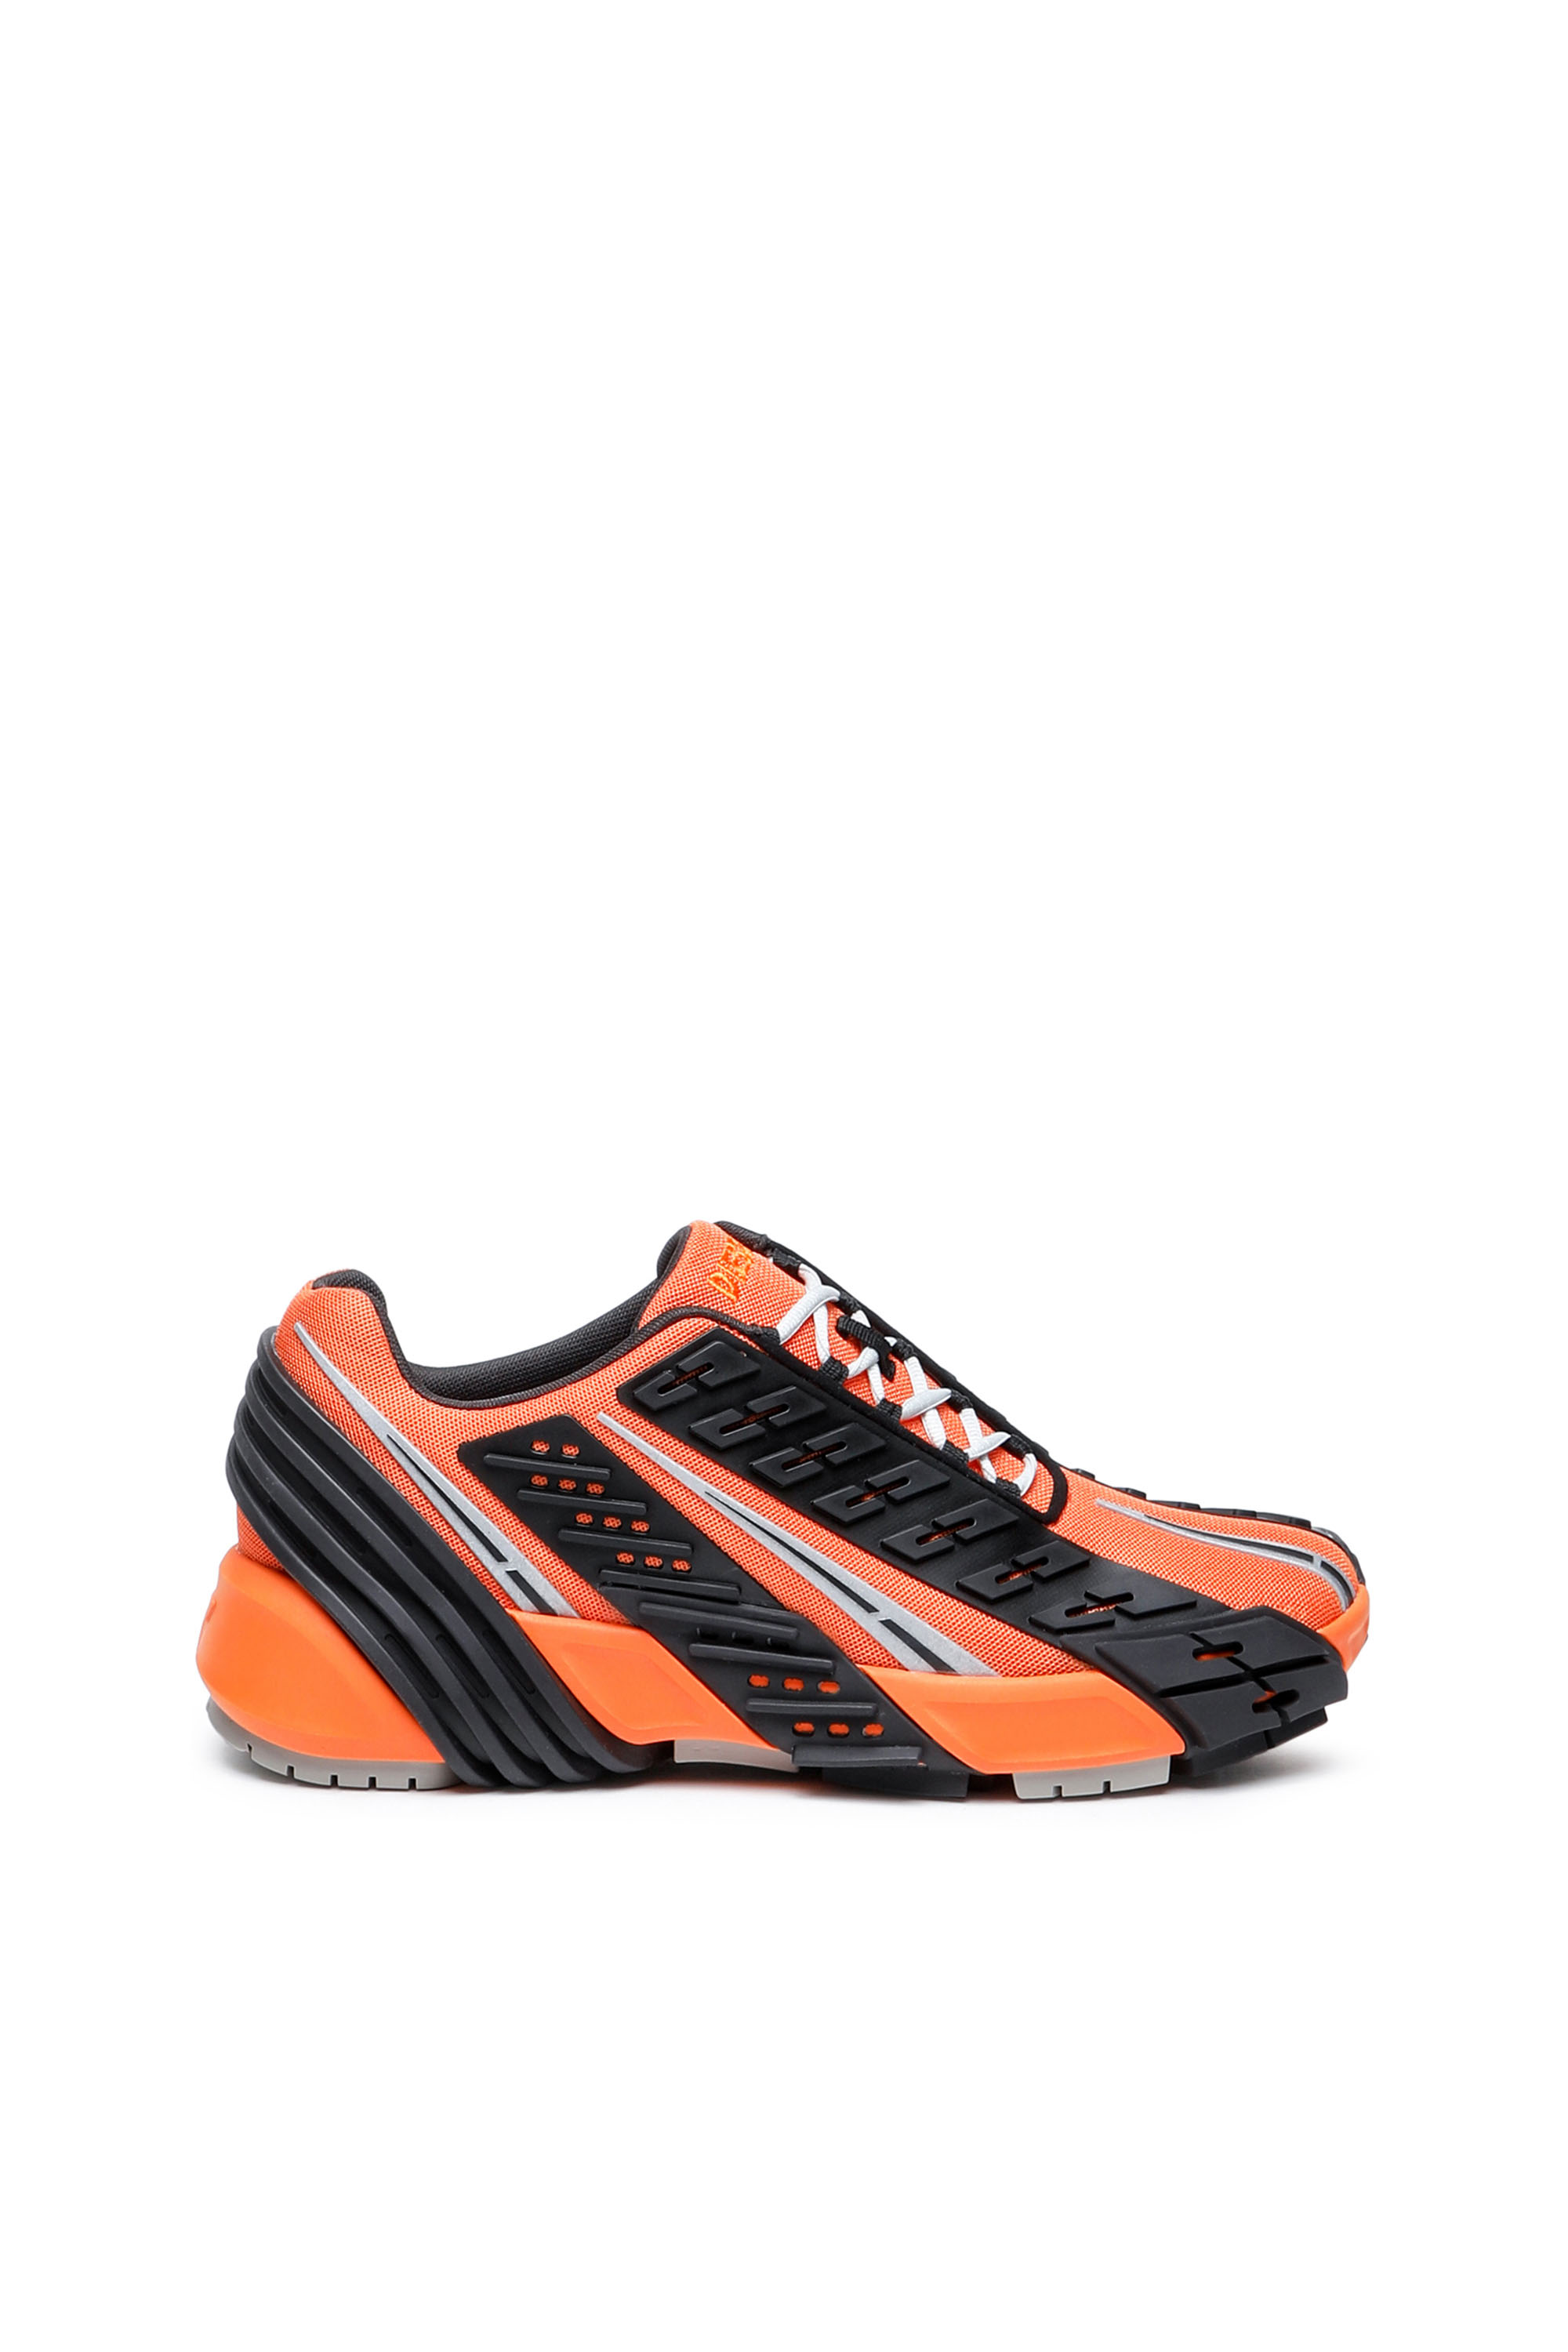 S-PROTOTYPE LOW, Black/Orange - Sneakers